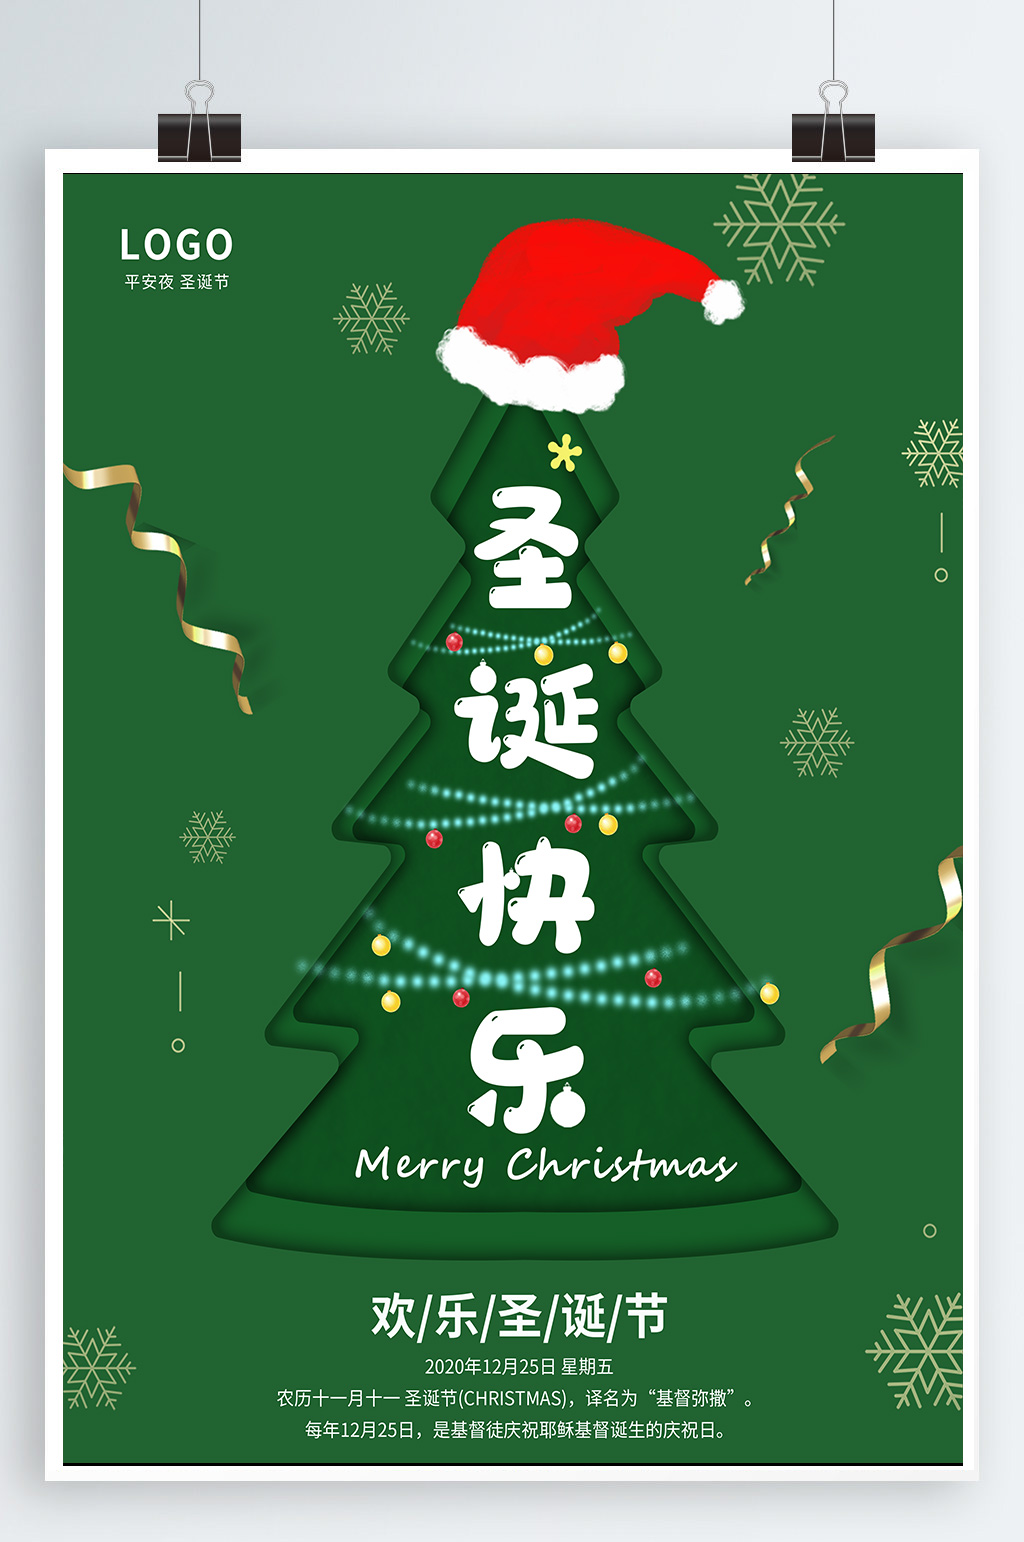 众图网独家提供圣诞节海报圣诞节主题素材免费下载,本作品是由大众ctp